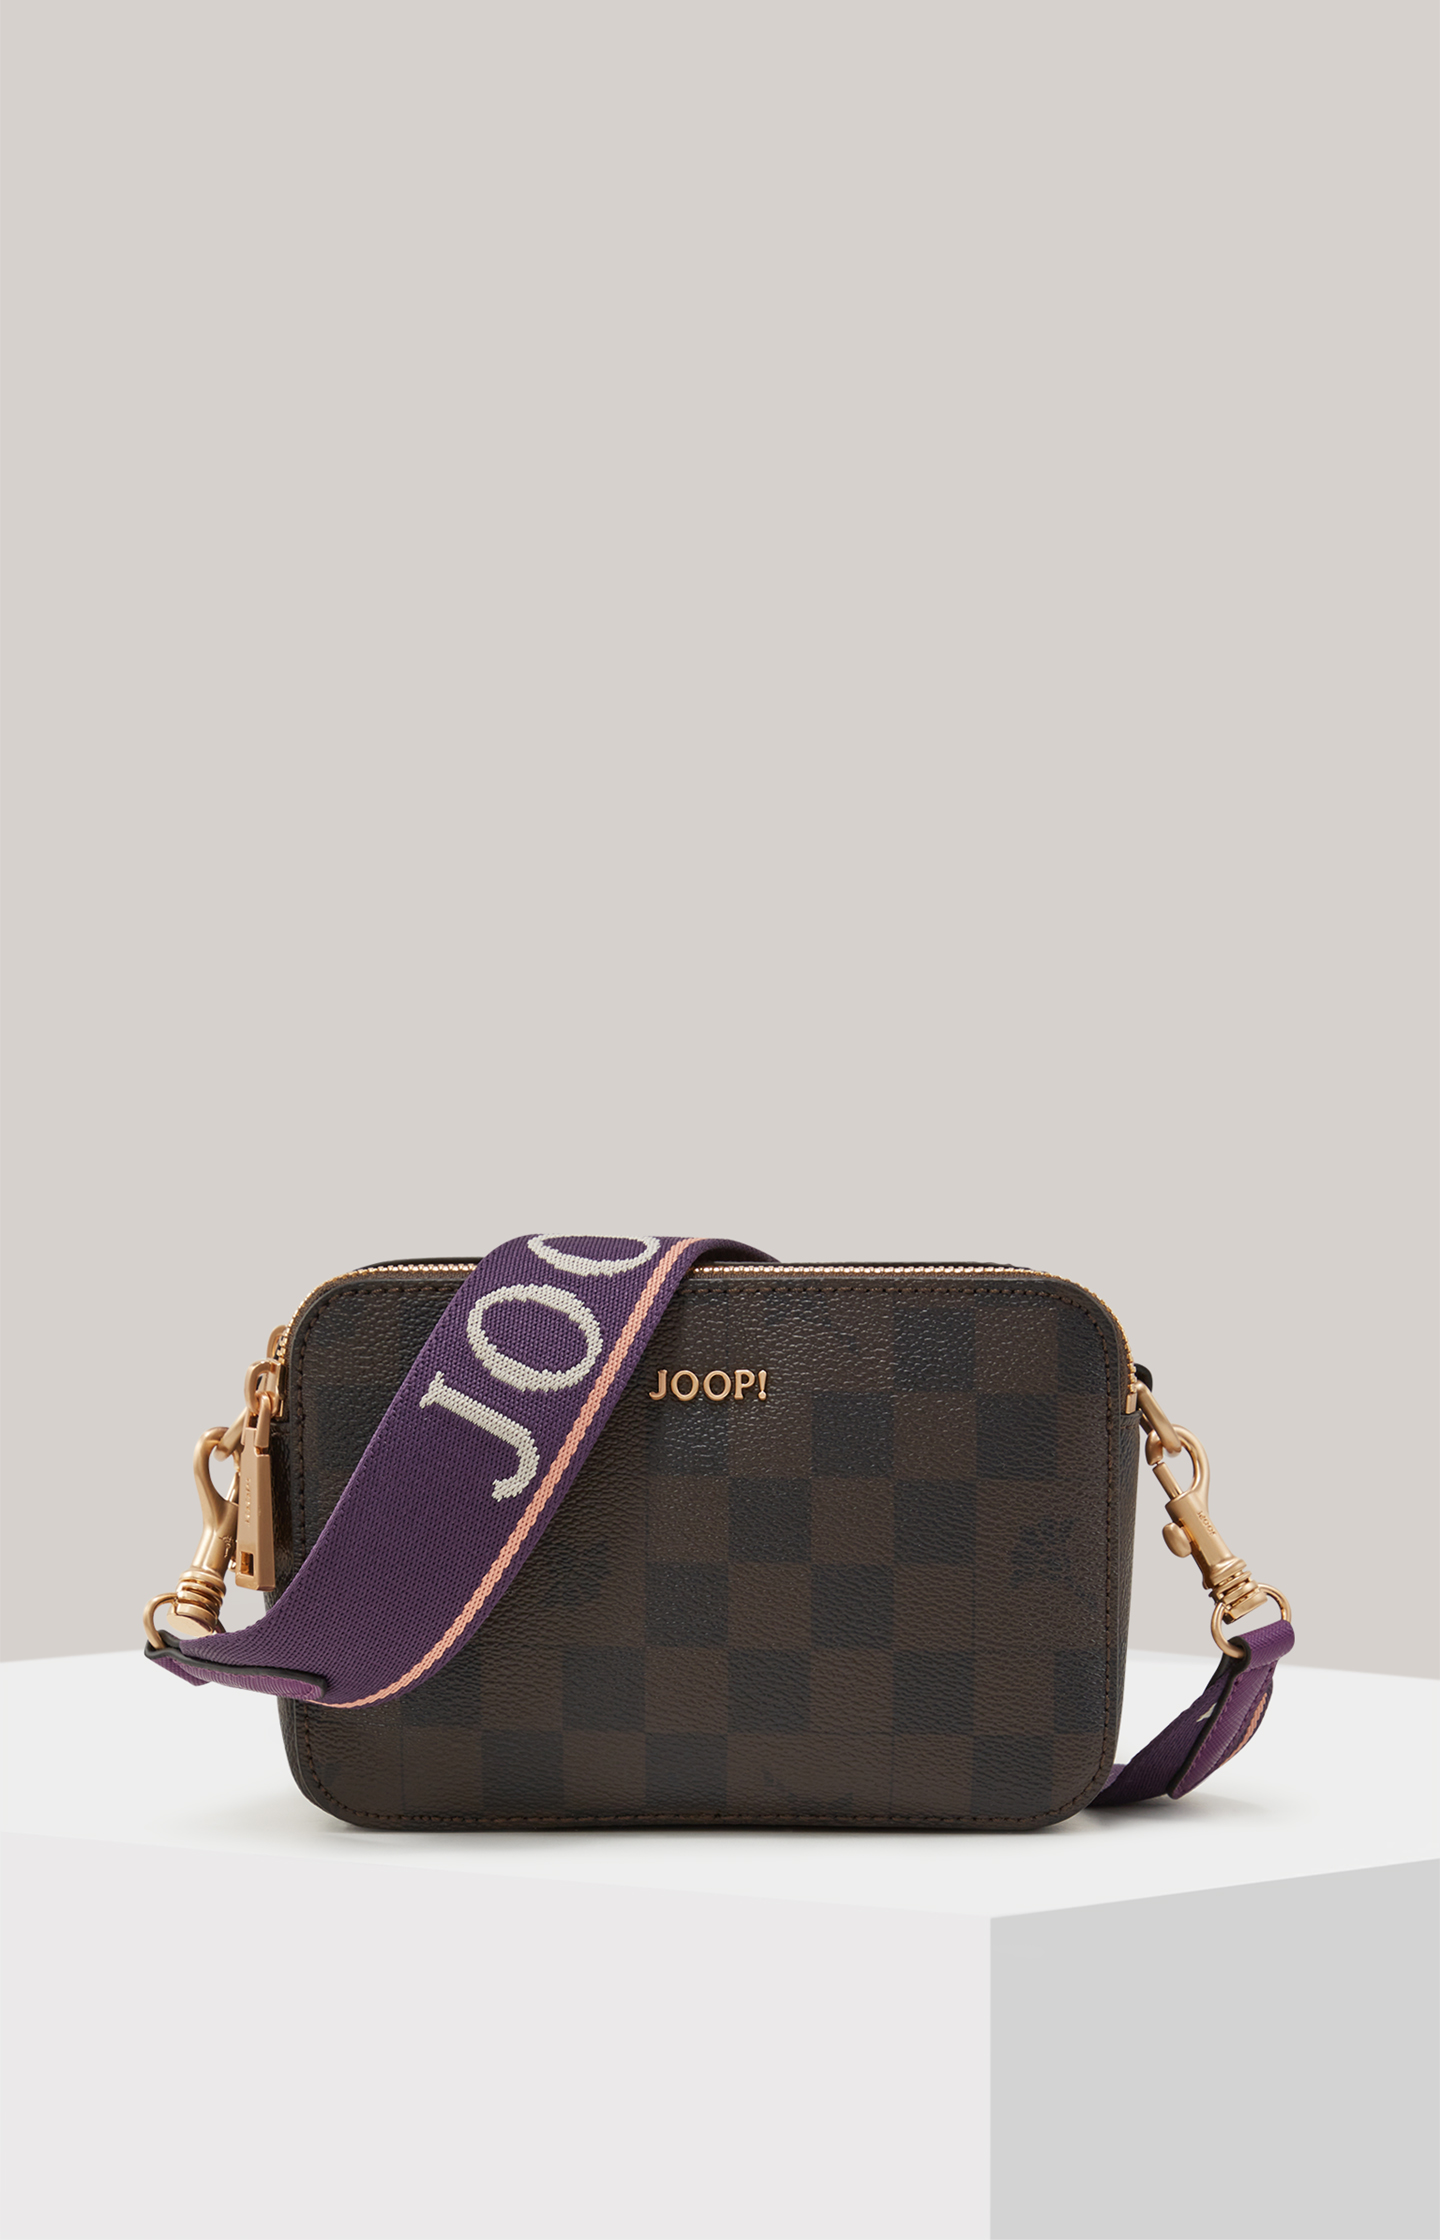 Piazza Diletta Jasmina Shoulder Bag in Dark Brown - in the JOOP! Online Shop